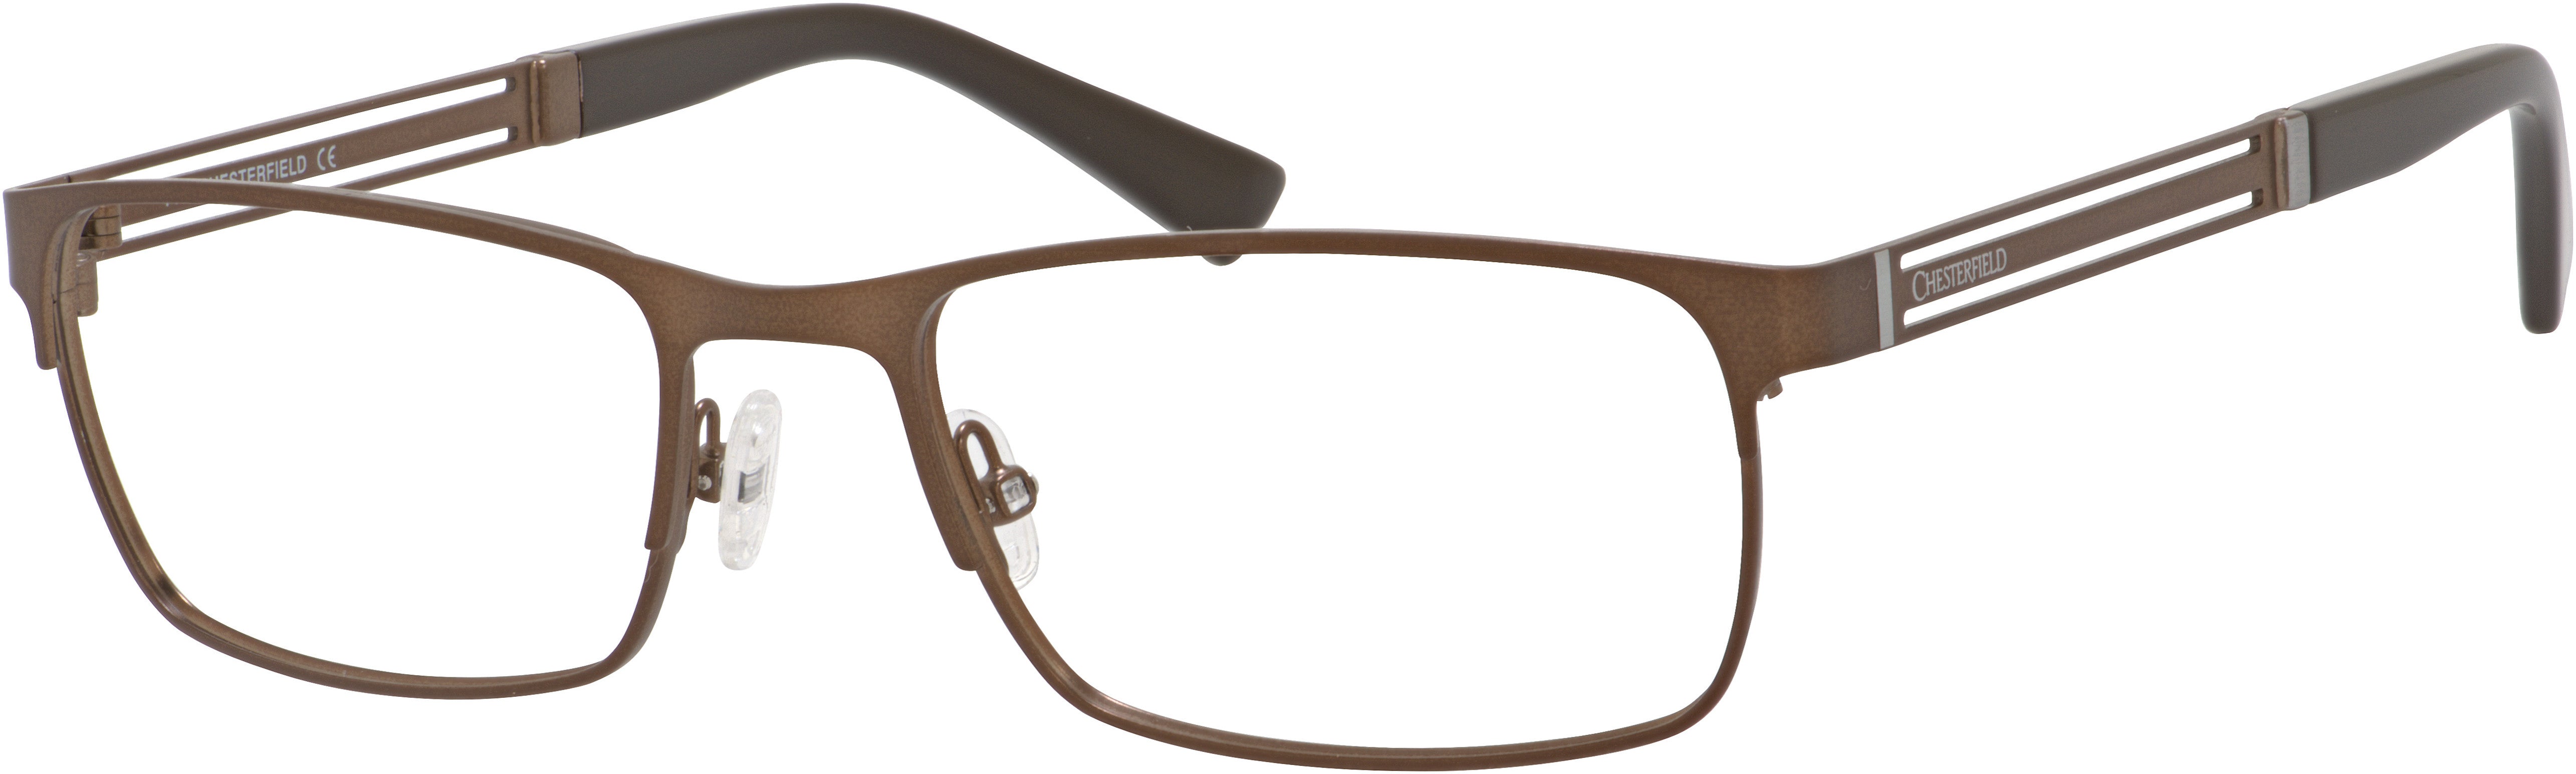  Chesterfield 885 Rectangular Eyeglasses 009Q-009Q  Brown (00 Demo Lens)